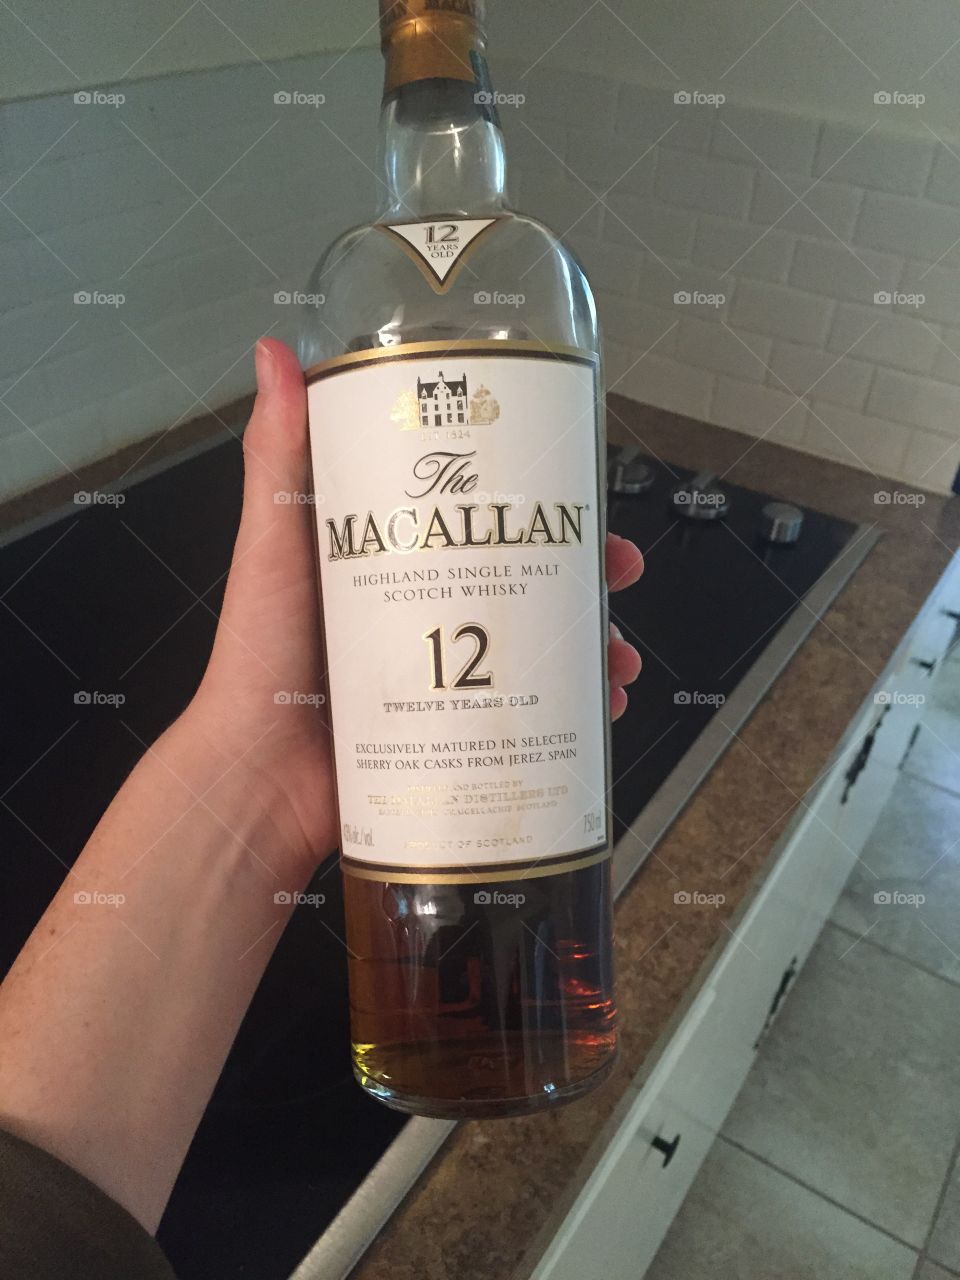 Macallan. A bottle of Macallan Scotch Whisky